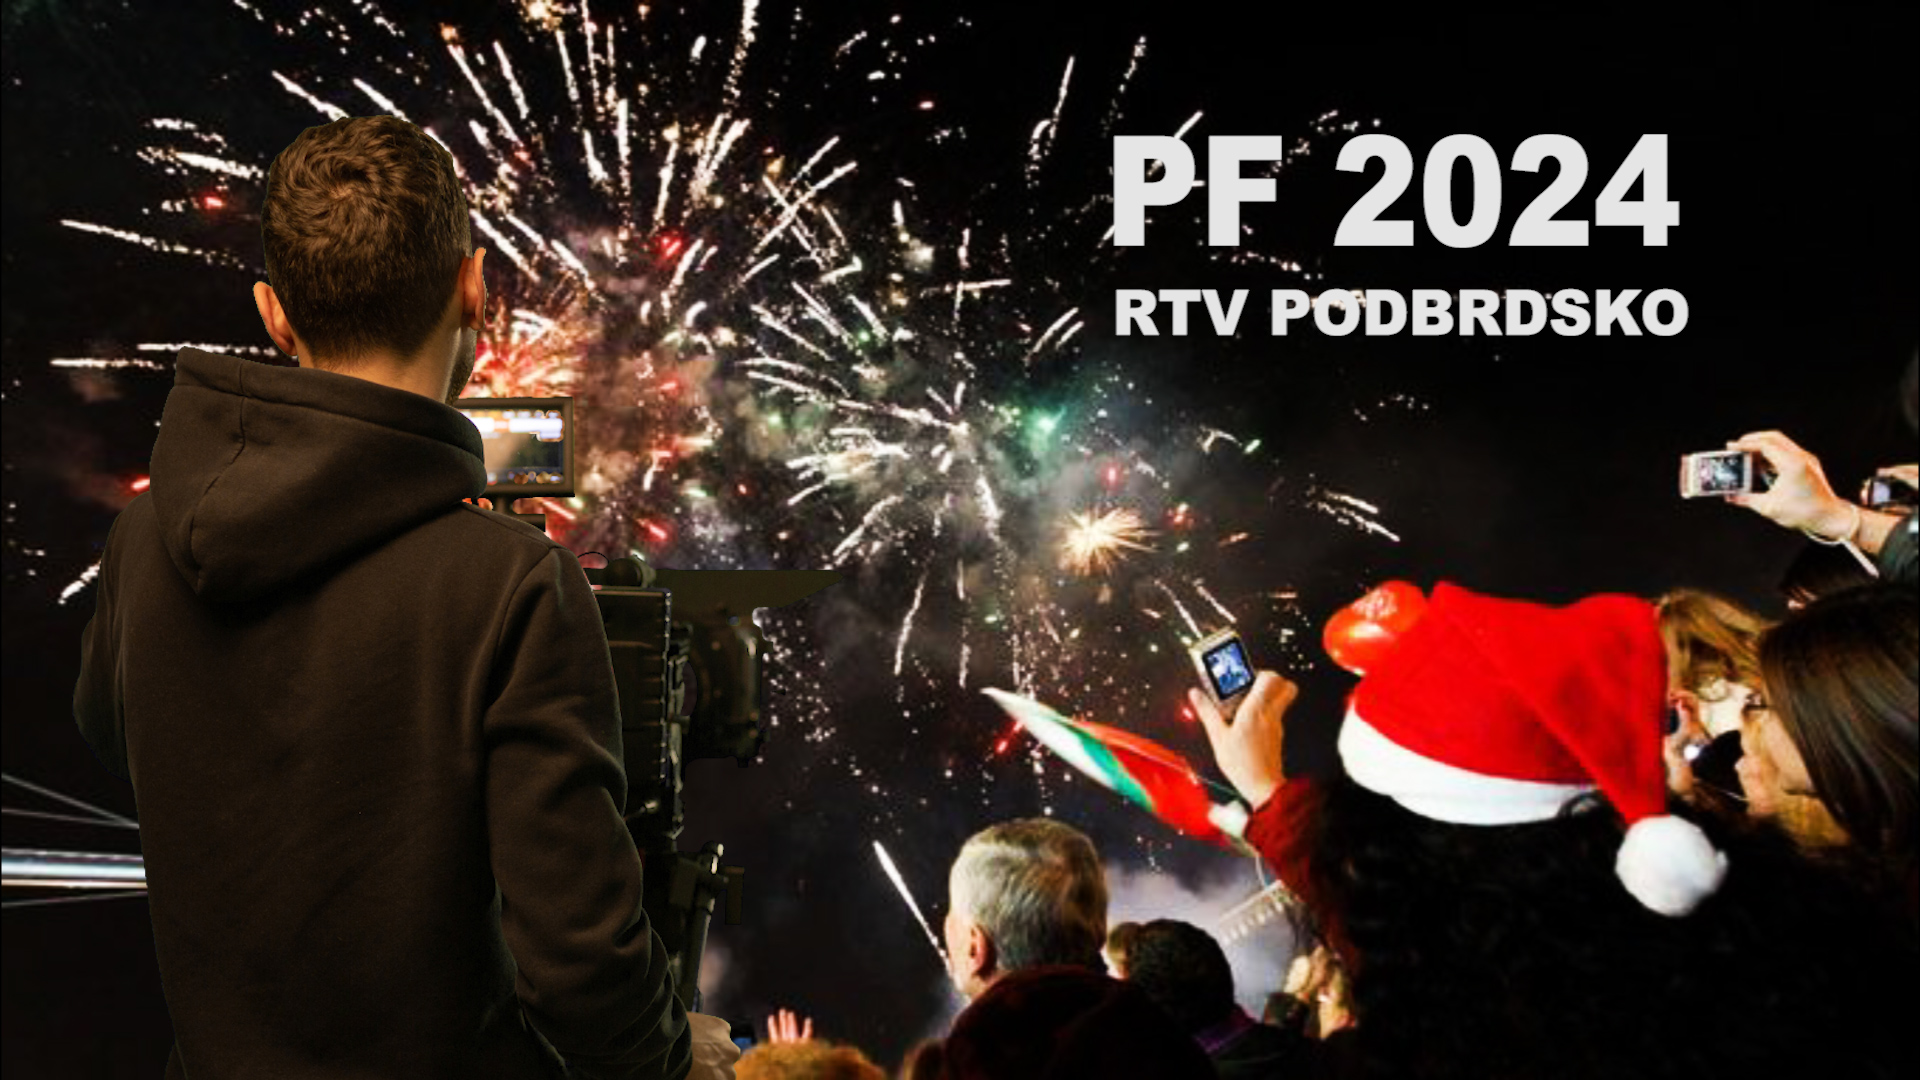 PF 2024: Jen samé dobré zprávy vám do nového roku přeje RTV Podbrdsko